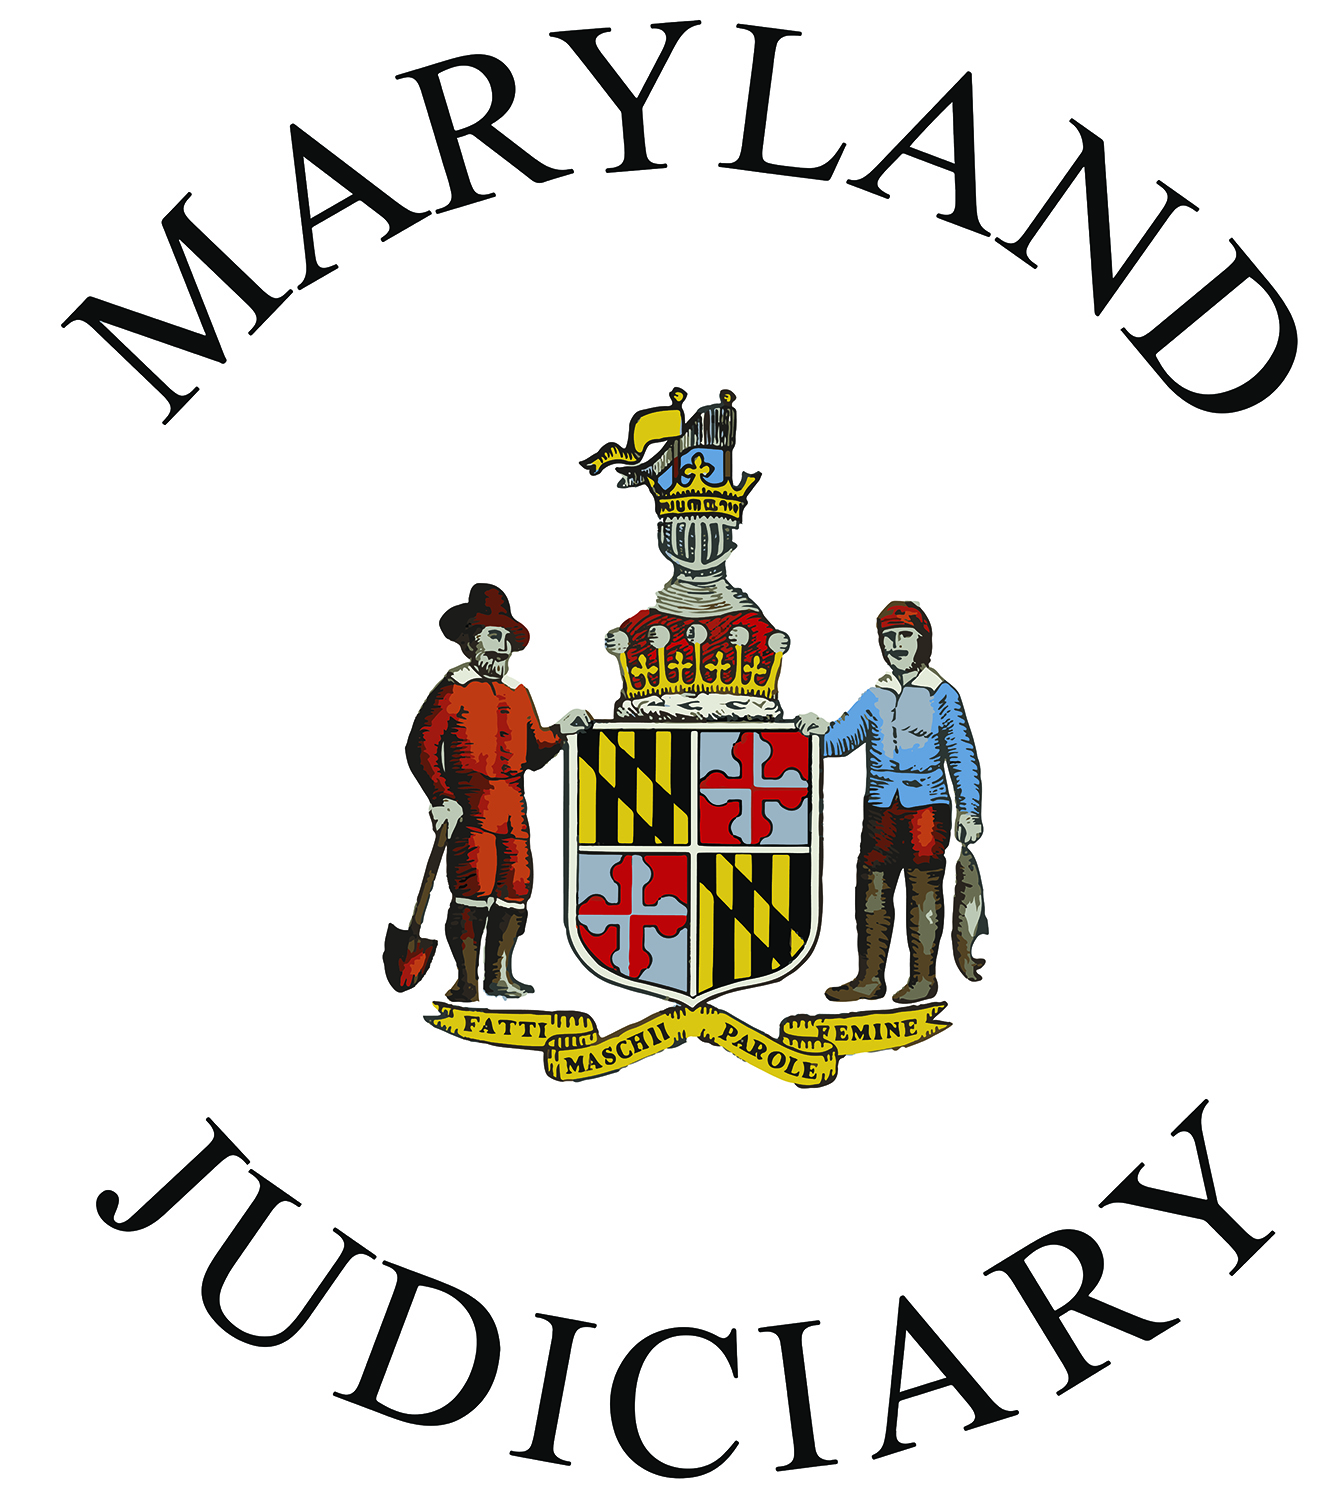 Jury Trials Postponed Again In Maryland